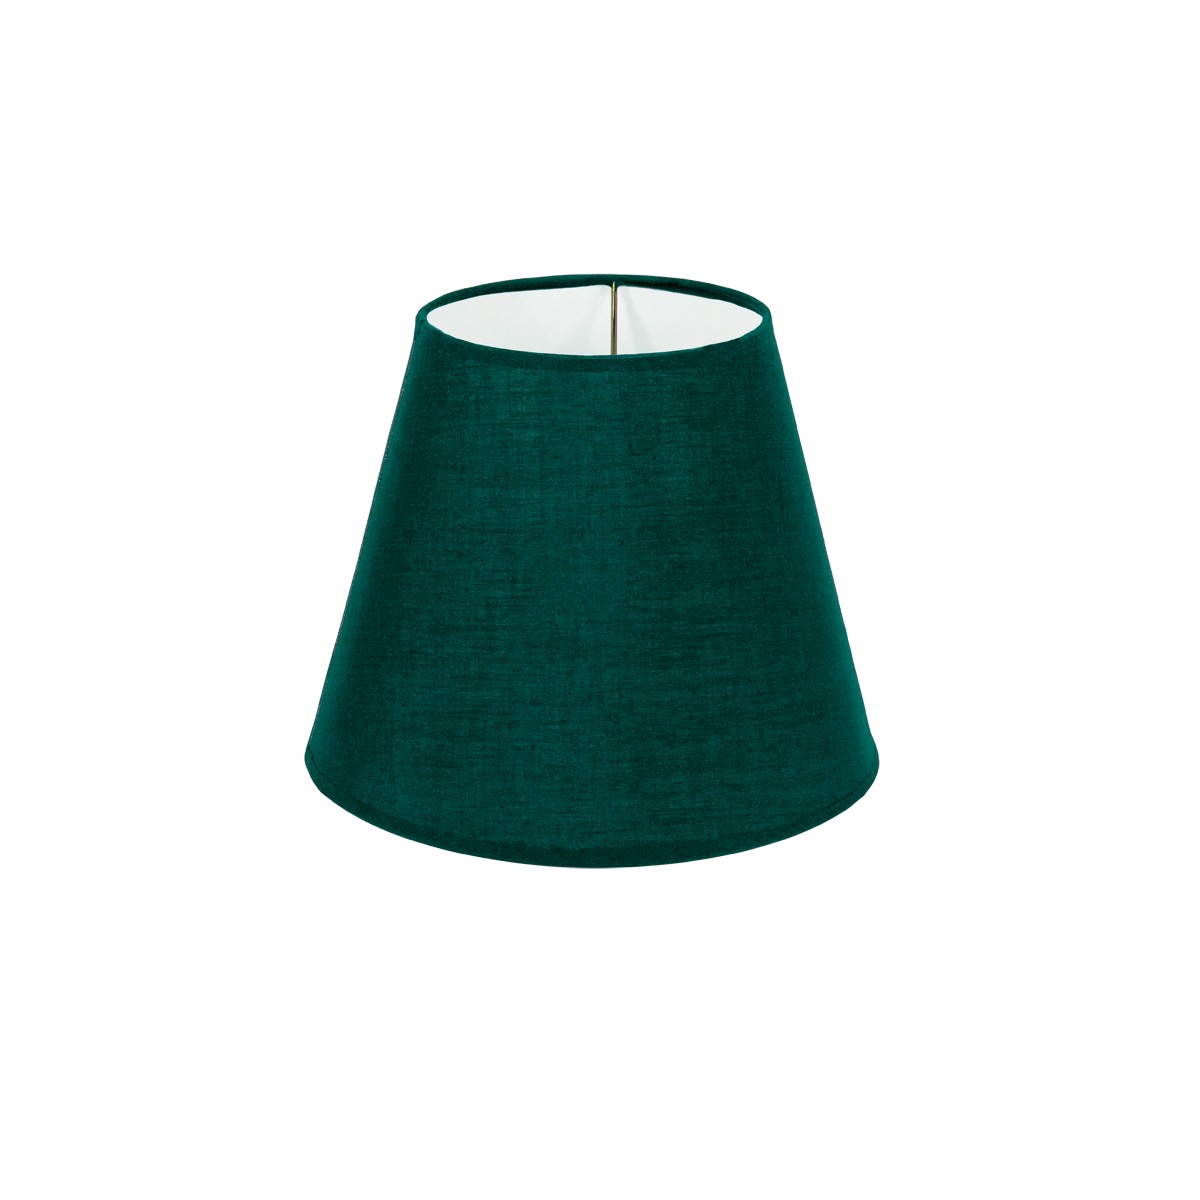 Καπέλο Μονόχρωμο Στρογγυλό Φ22cm Κάτω Πλευρά -Σε Πράσινο Χρώμα        VK/E27/E14/D22/GR